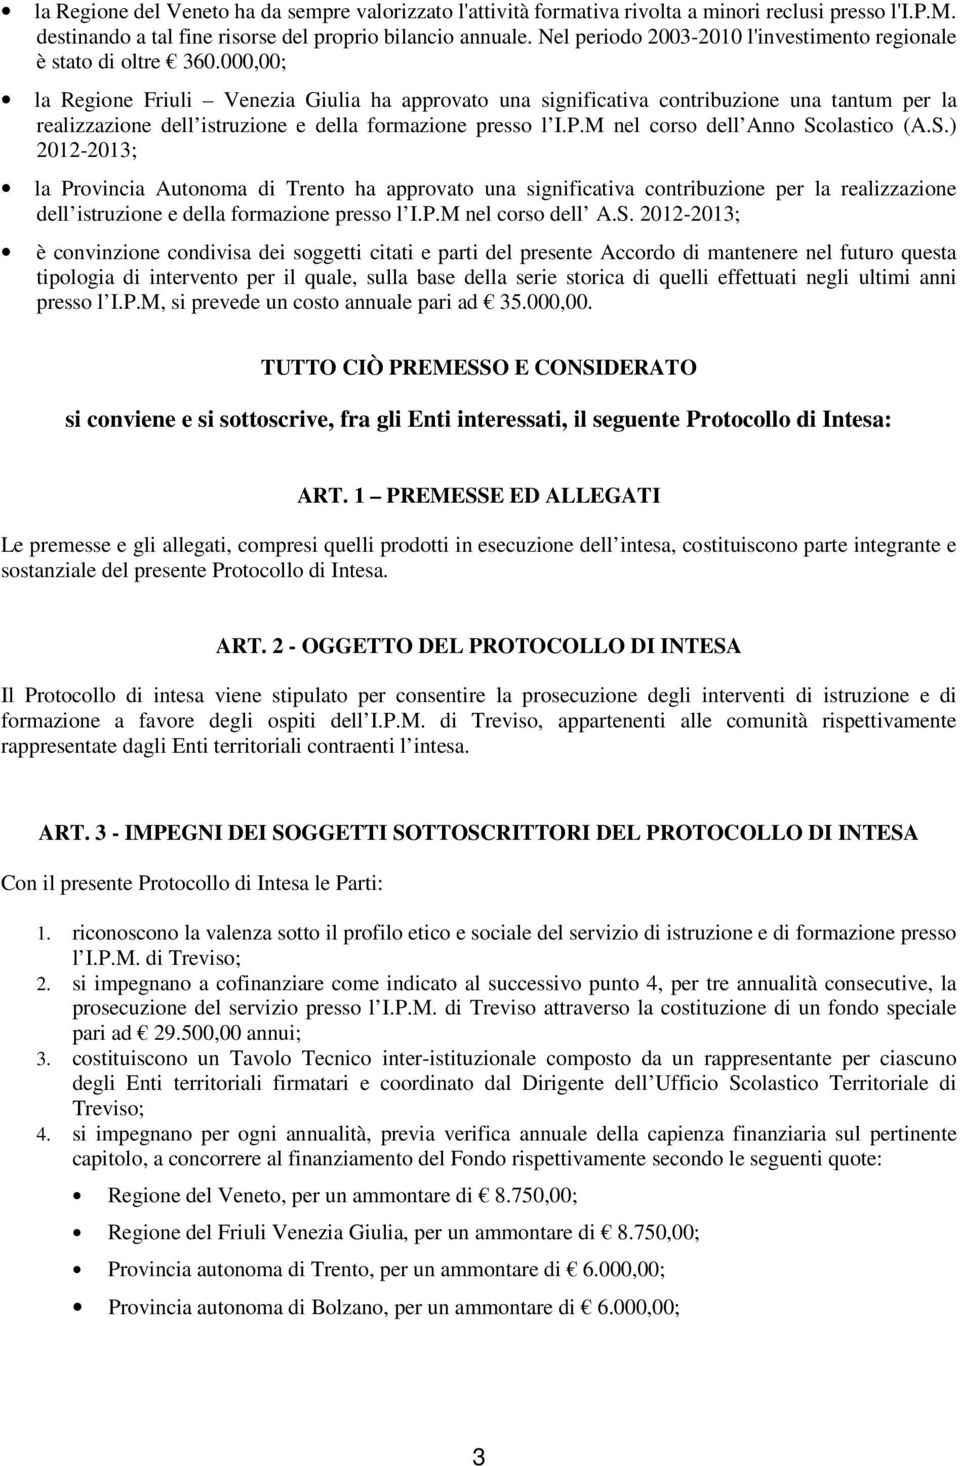 000,00; la Regione Friuli Venezia Giulia ha approvato una significativa contribuzione una tantum per la realizzazione dell istruzione e della formazione presso l I.P.